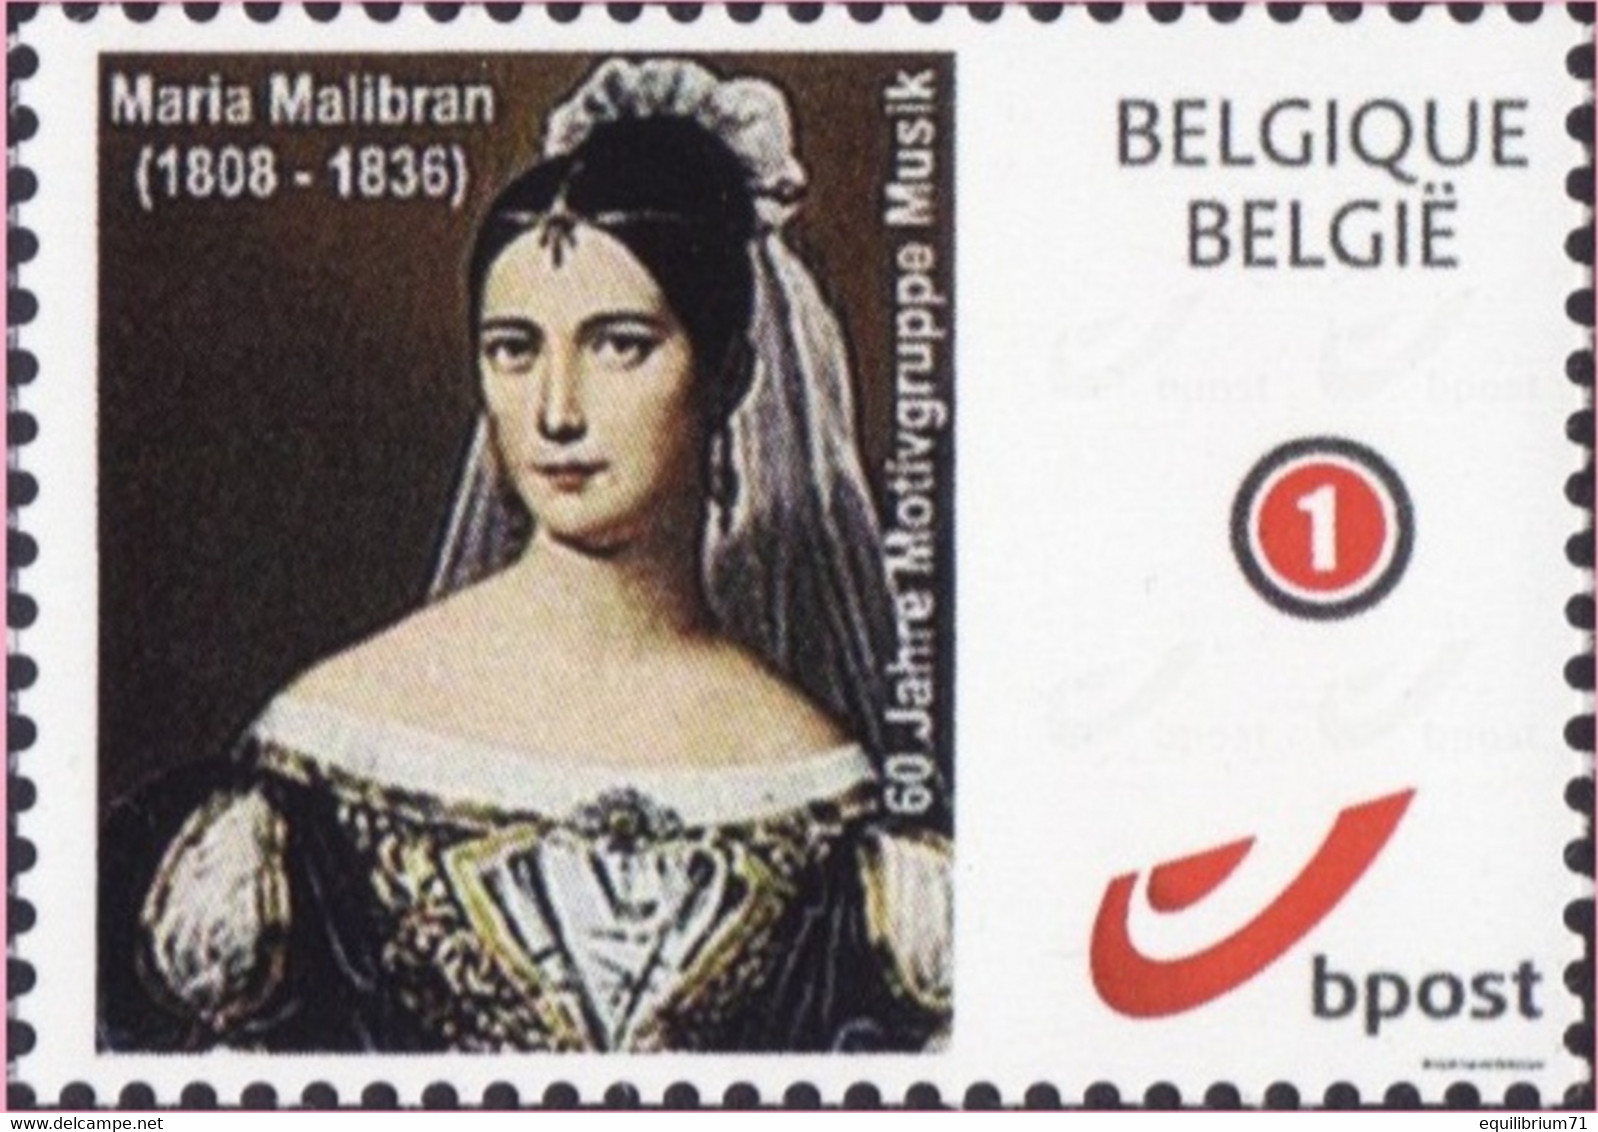 DUOSTAMP** / MYSTAMP** - Maria Malibran 1808 - 1836 "La Malibran" - Artiste Lyrique - Mezzo-soprano - Neufs